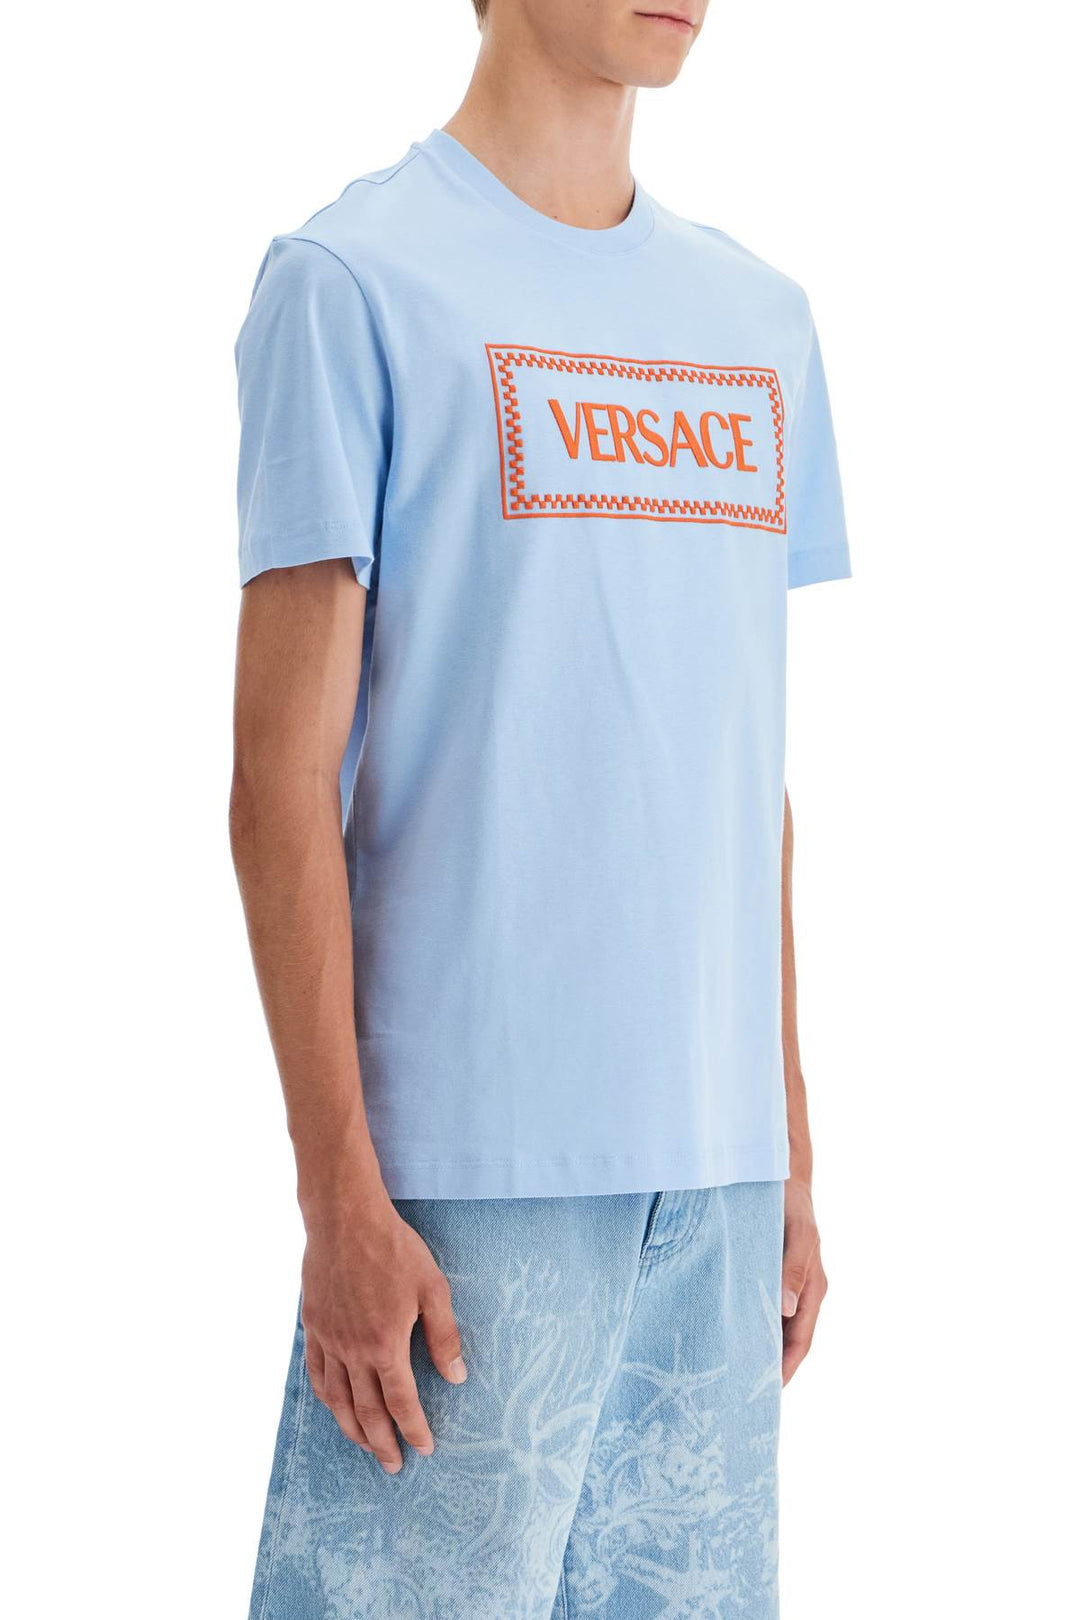 Versace Embroidered Logo T Shirt   Light Blue